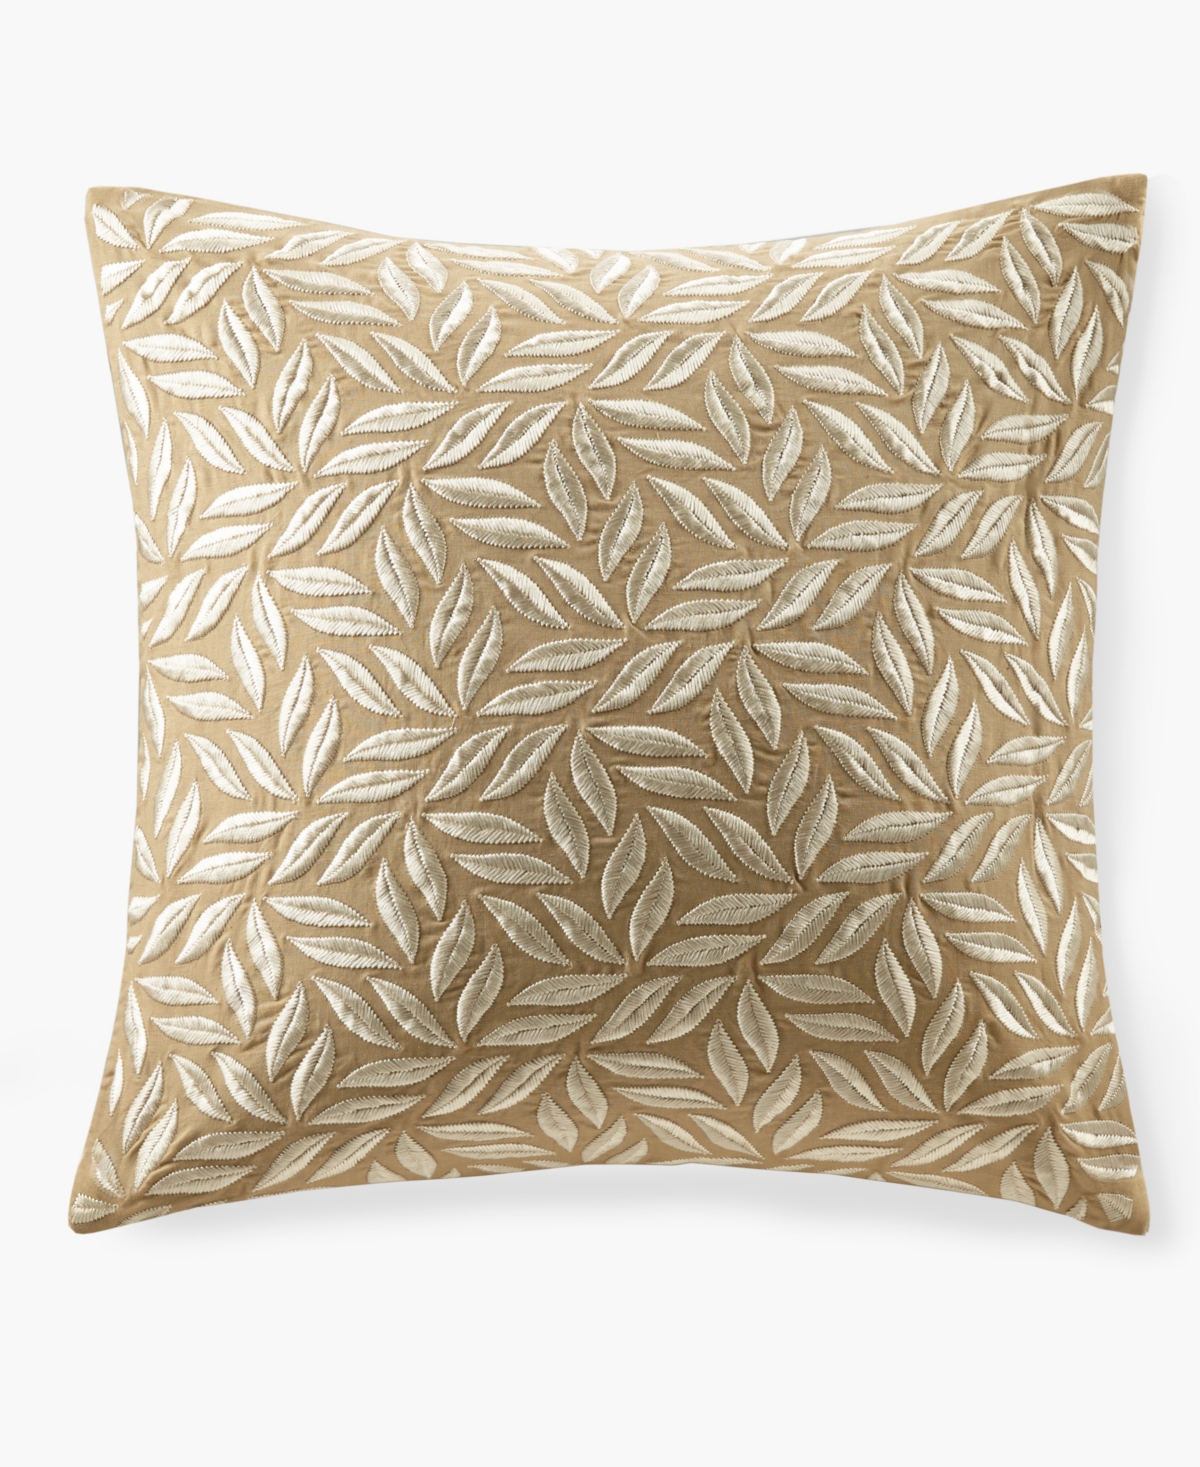 Croscill Melodia Decorative Pillow, 20" X 20" In Tan